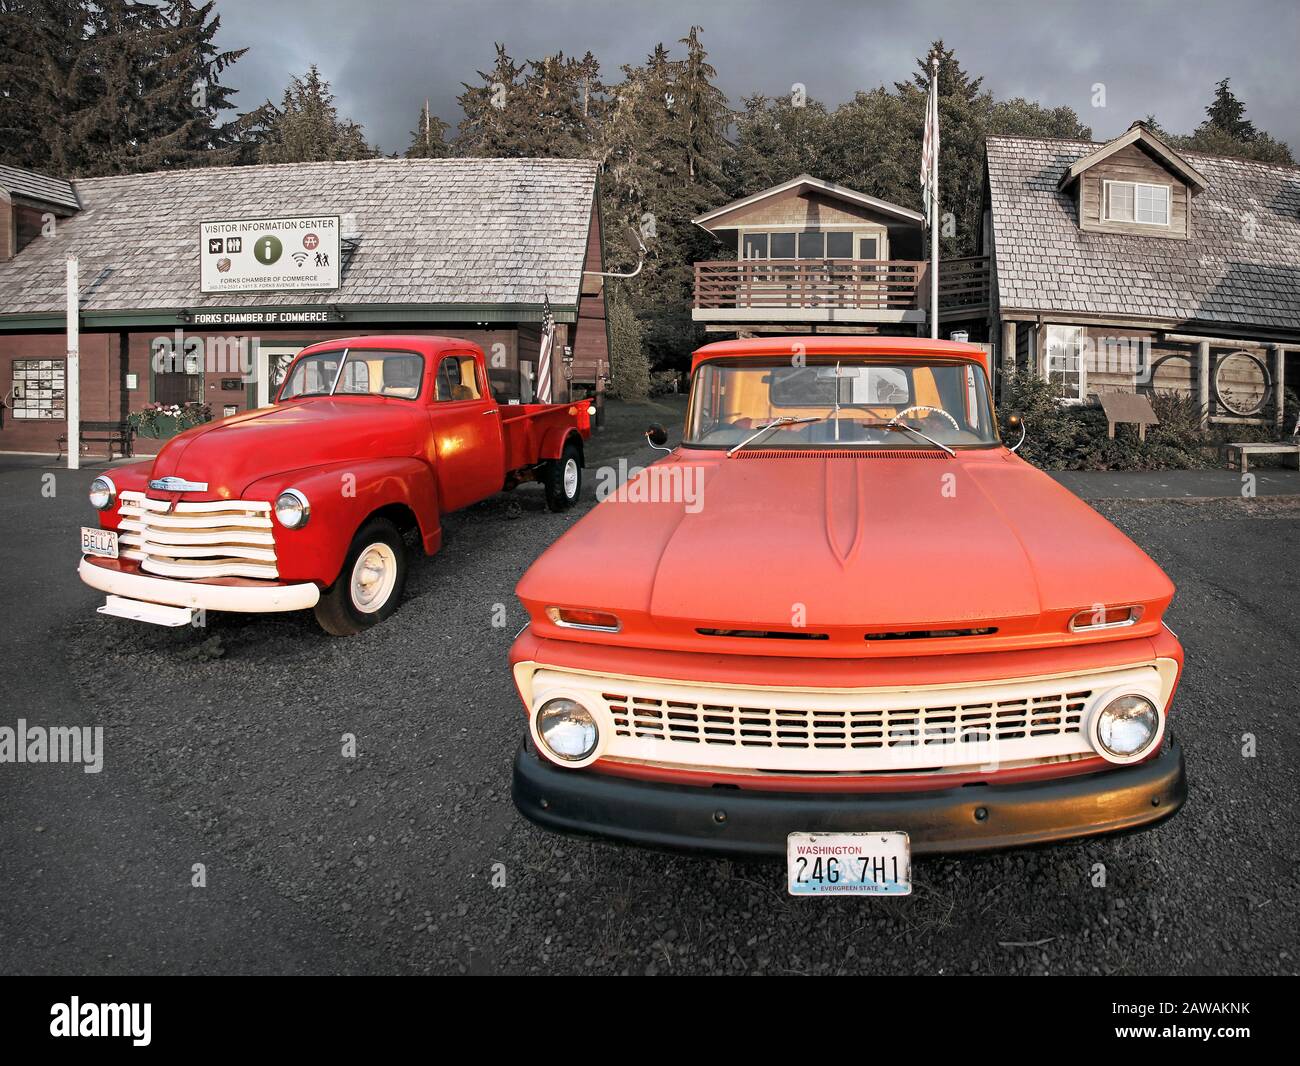 Chevy Trucks di fronte al Forks Visitor Center e al museo del legno a Forks Washington. Il camion di sinistra è un Chevy 1953, che prevede il truc di Bella Swan Foto Stock